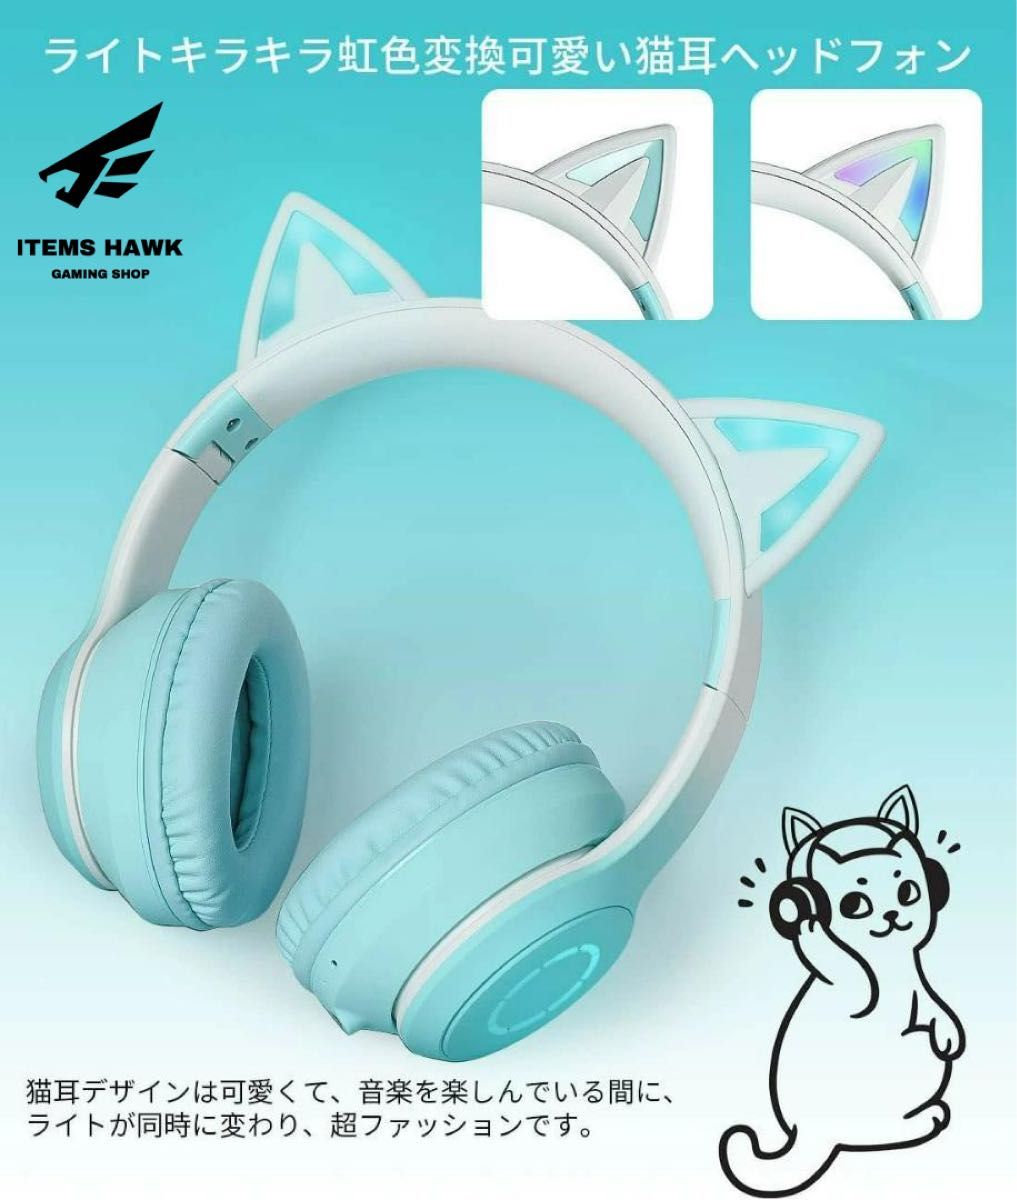 ヘッドホン 猫耳 ヘッドフォン Bluetooth 無線 ゲーム